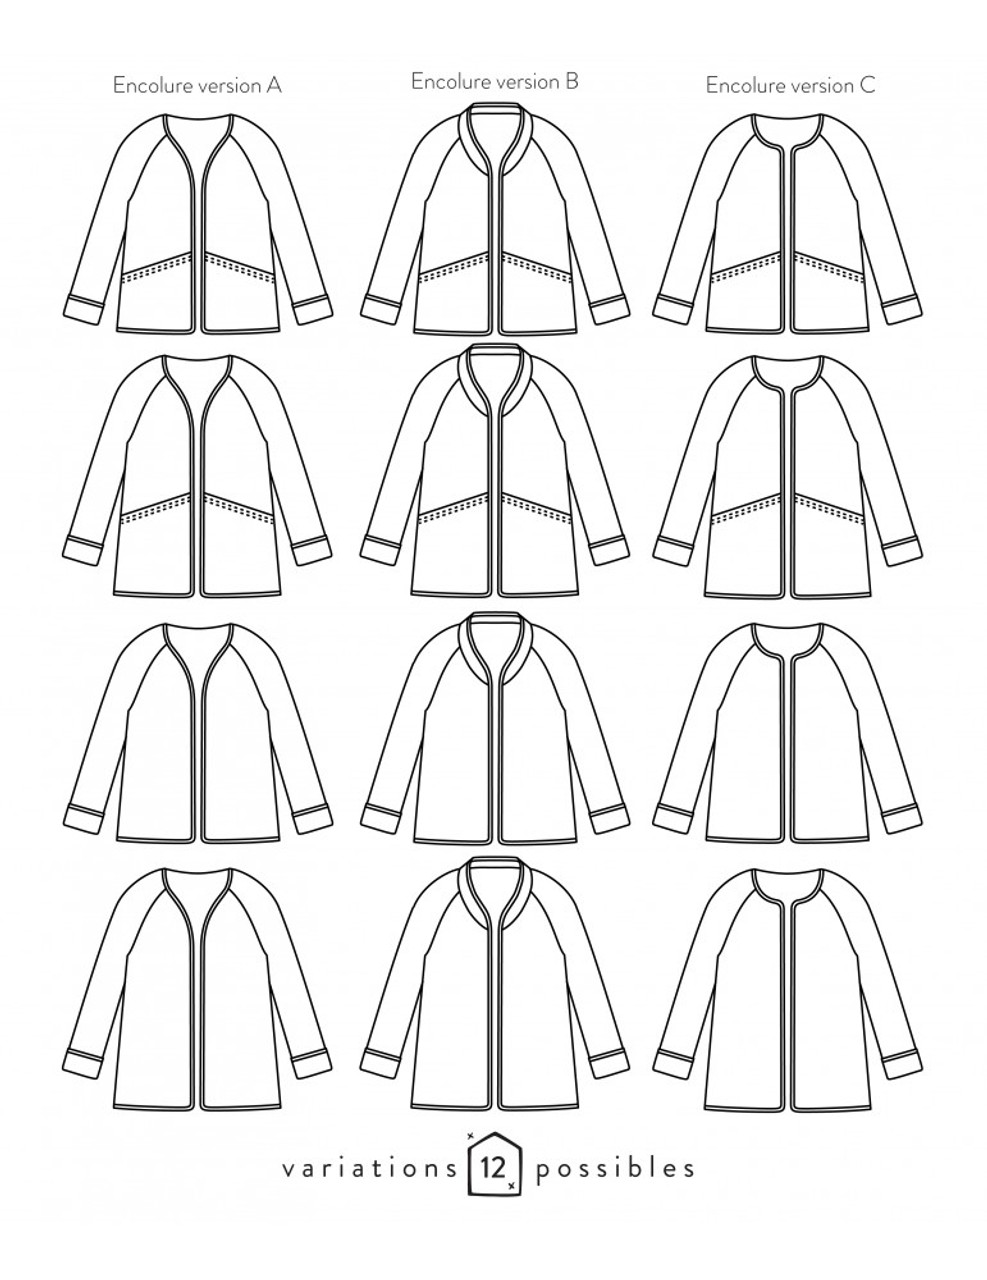 Atelier Sc√§mmit - Absolu Jacket Pattern